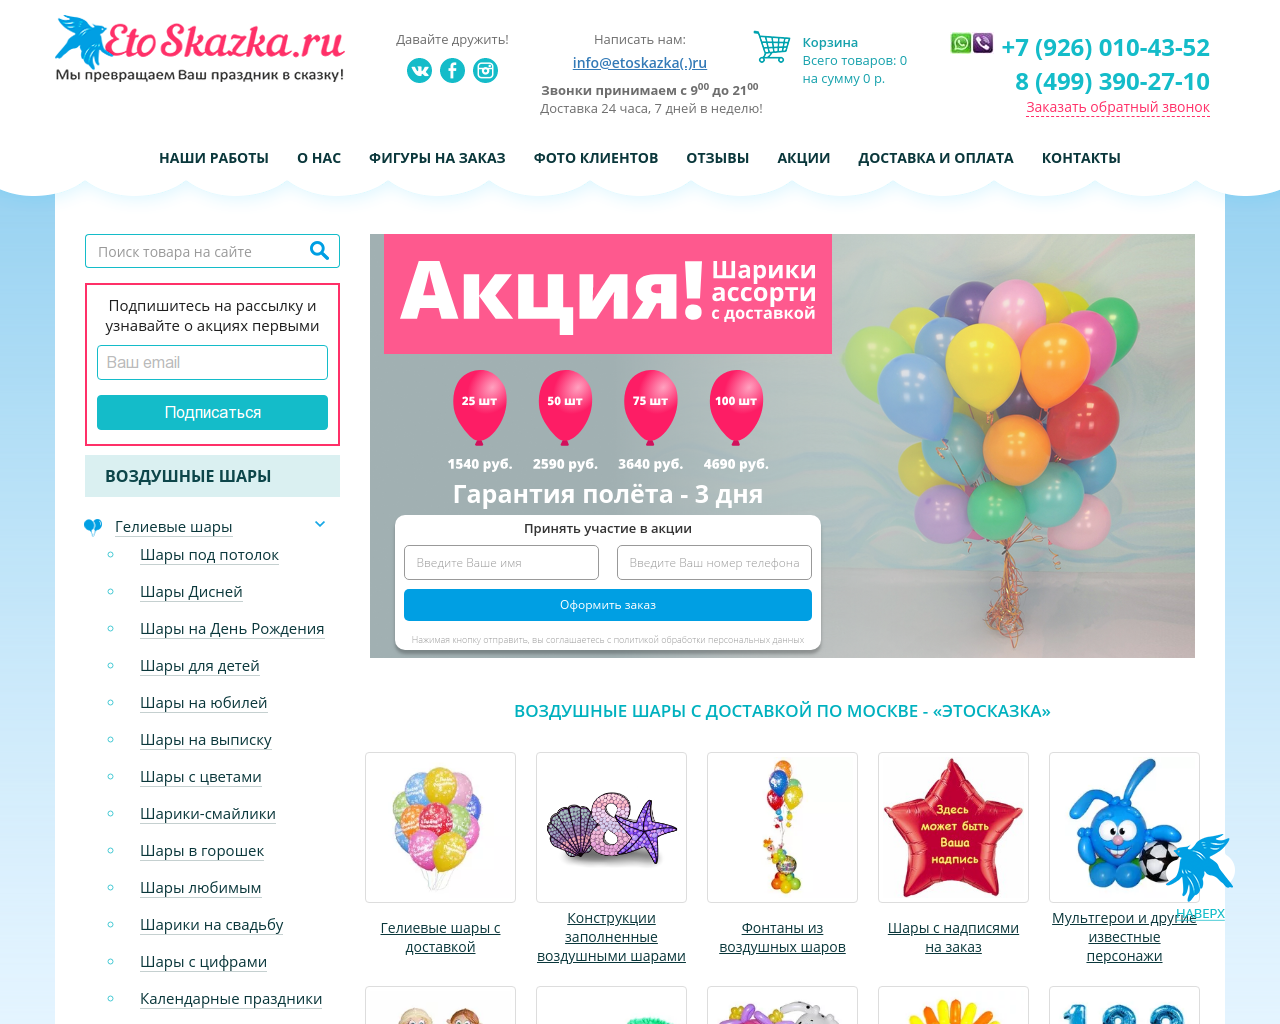 Изображение сайта etoskazka.ru в разрешении 1280x1024